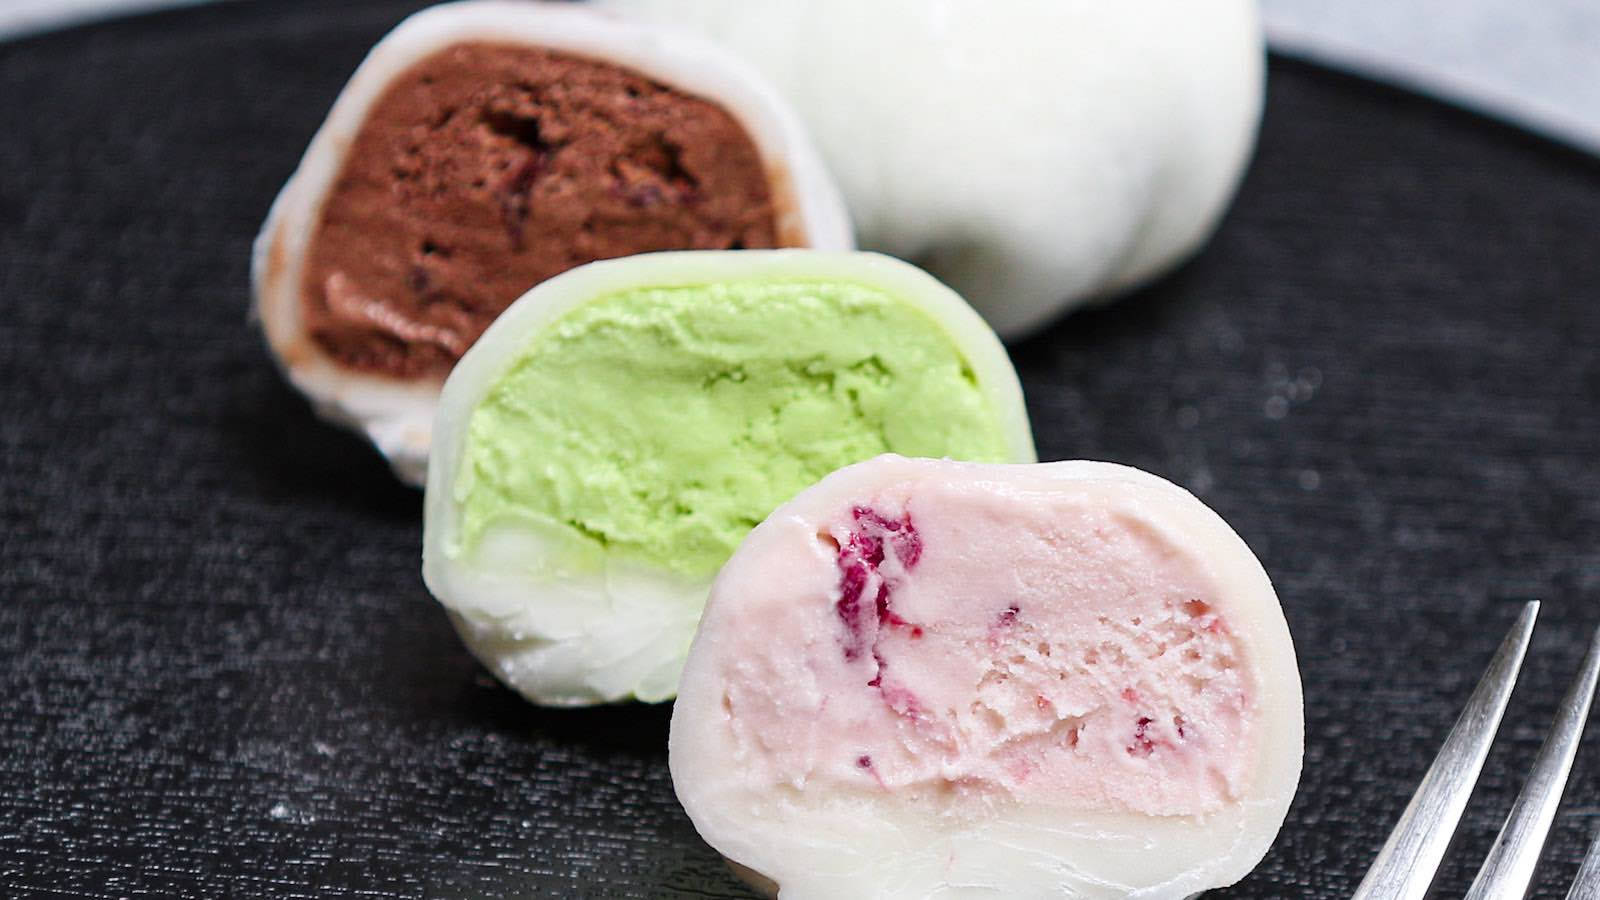 Mochi Ice Cream Flavors